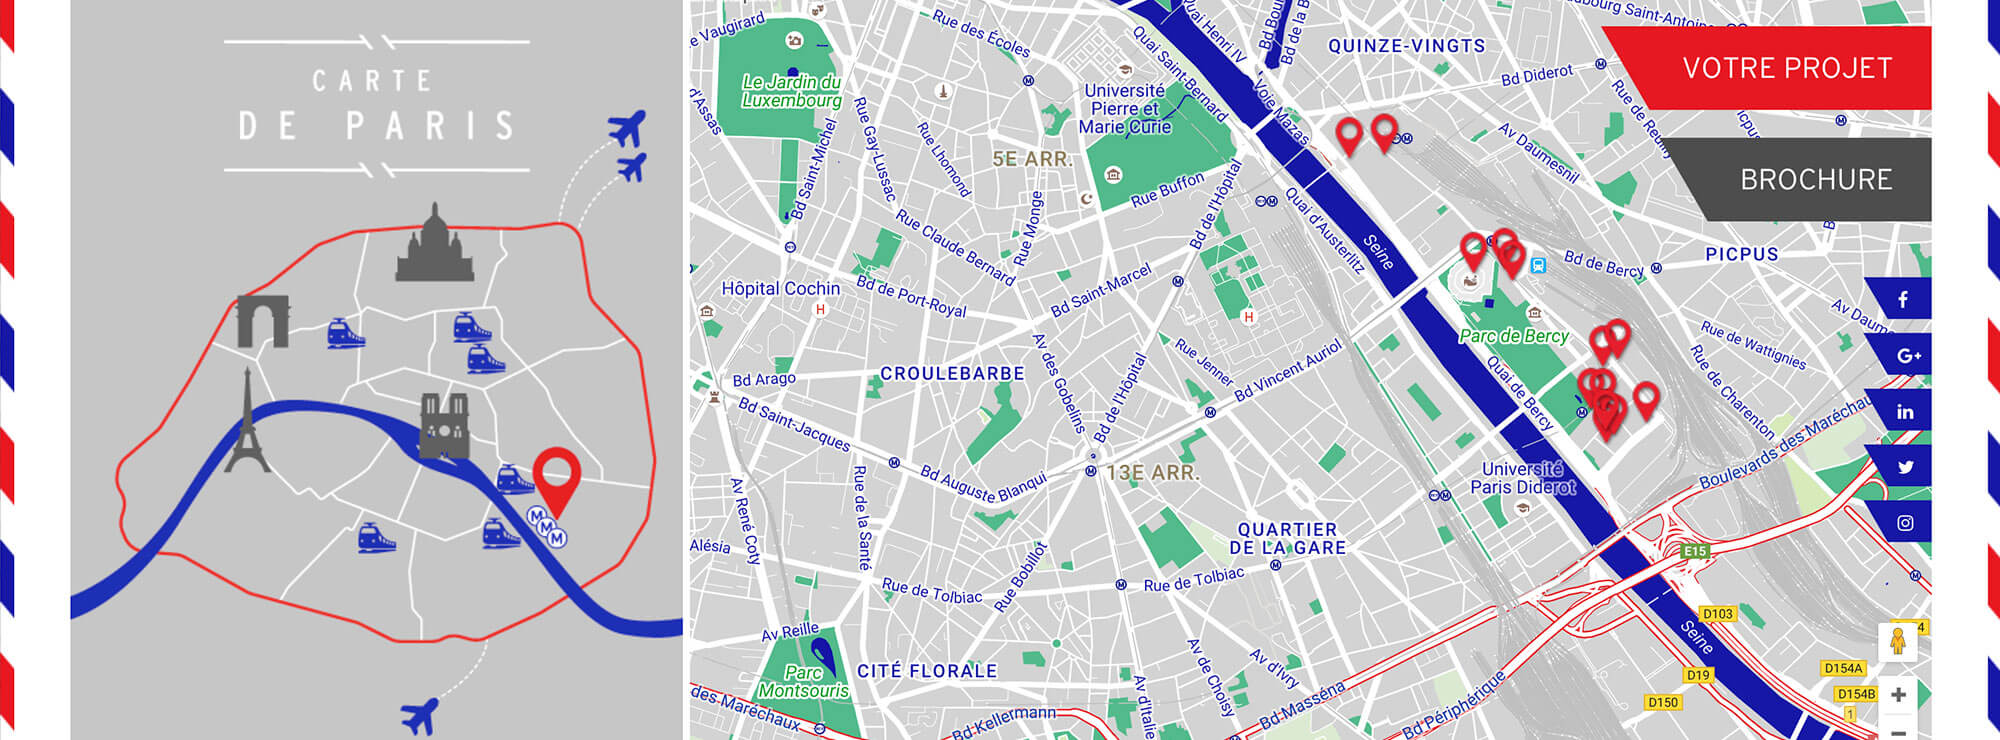 Destination Paris Bercy - a parisienne digital postcard